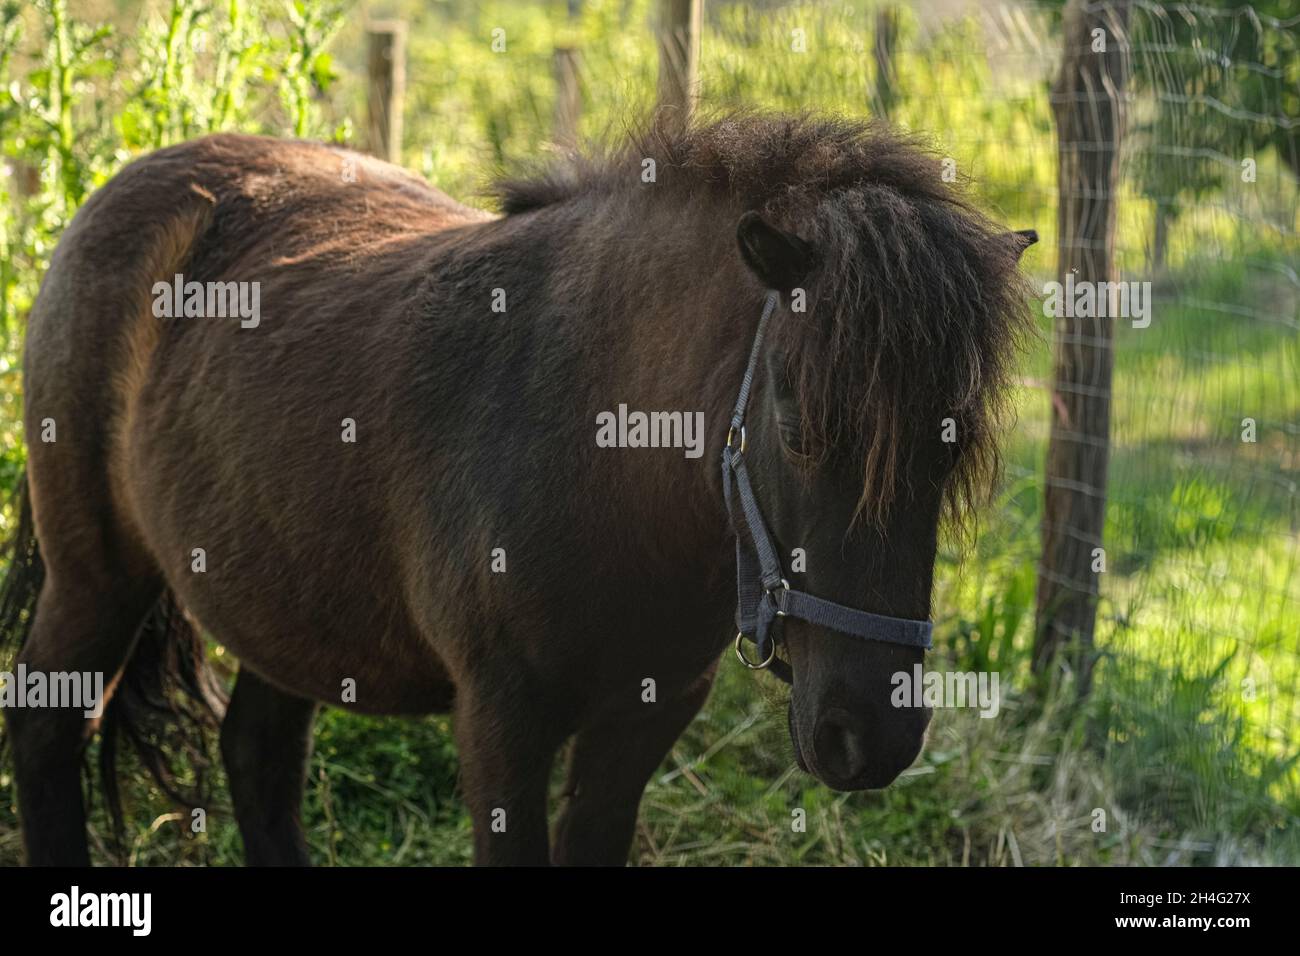 Dunkles Pony Pferd Porträt während des Lebens in wilden natürlichen Bauernhof, Reitertierrasse Stockfoto